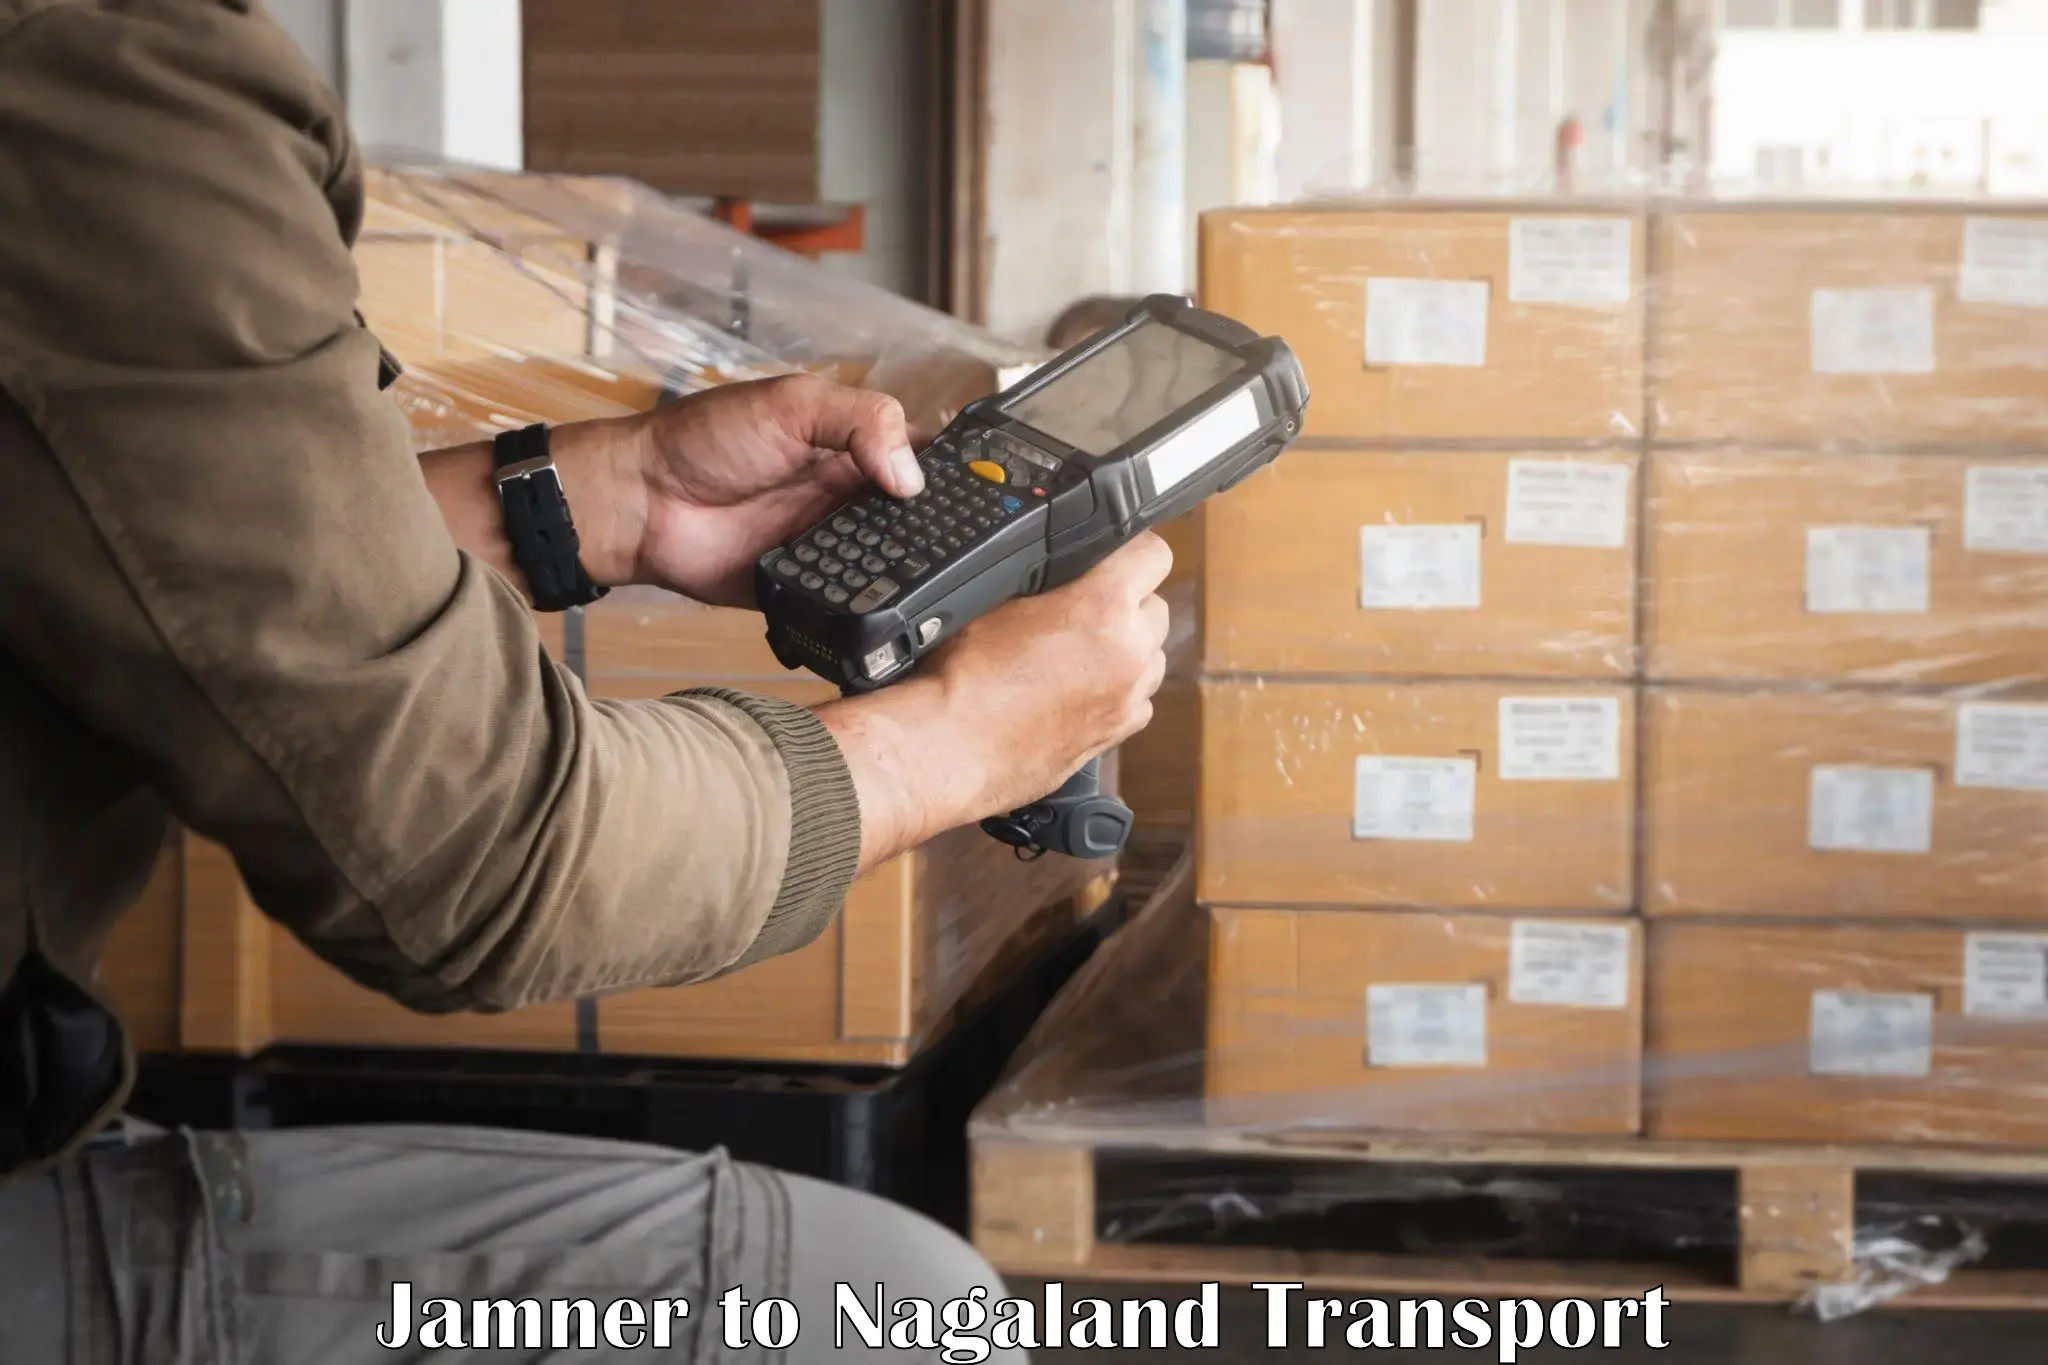 Delivery service Jamner to NIT Nagaland